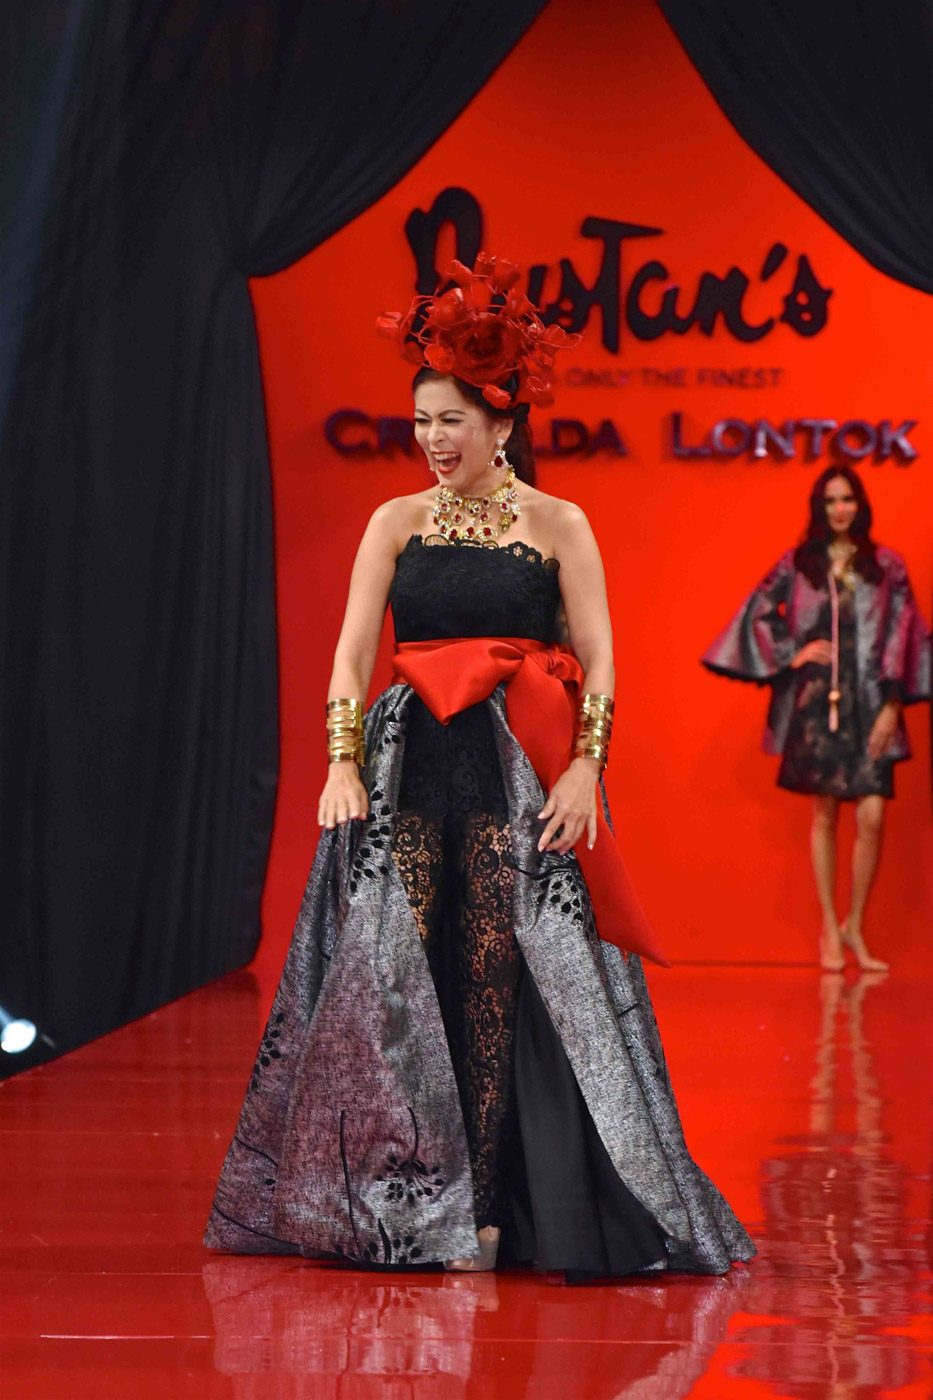 Criselda Lontok: Epitomizing elegant dressing